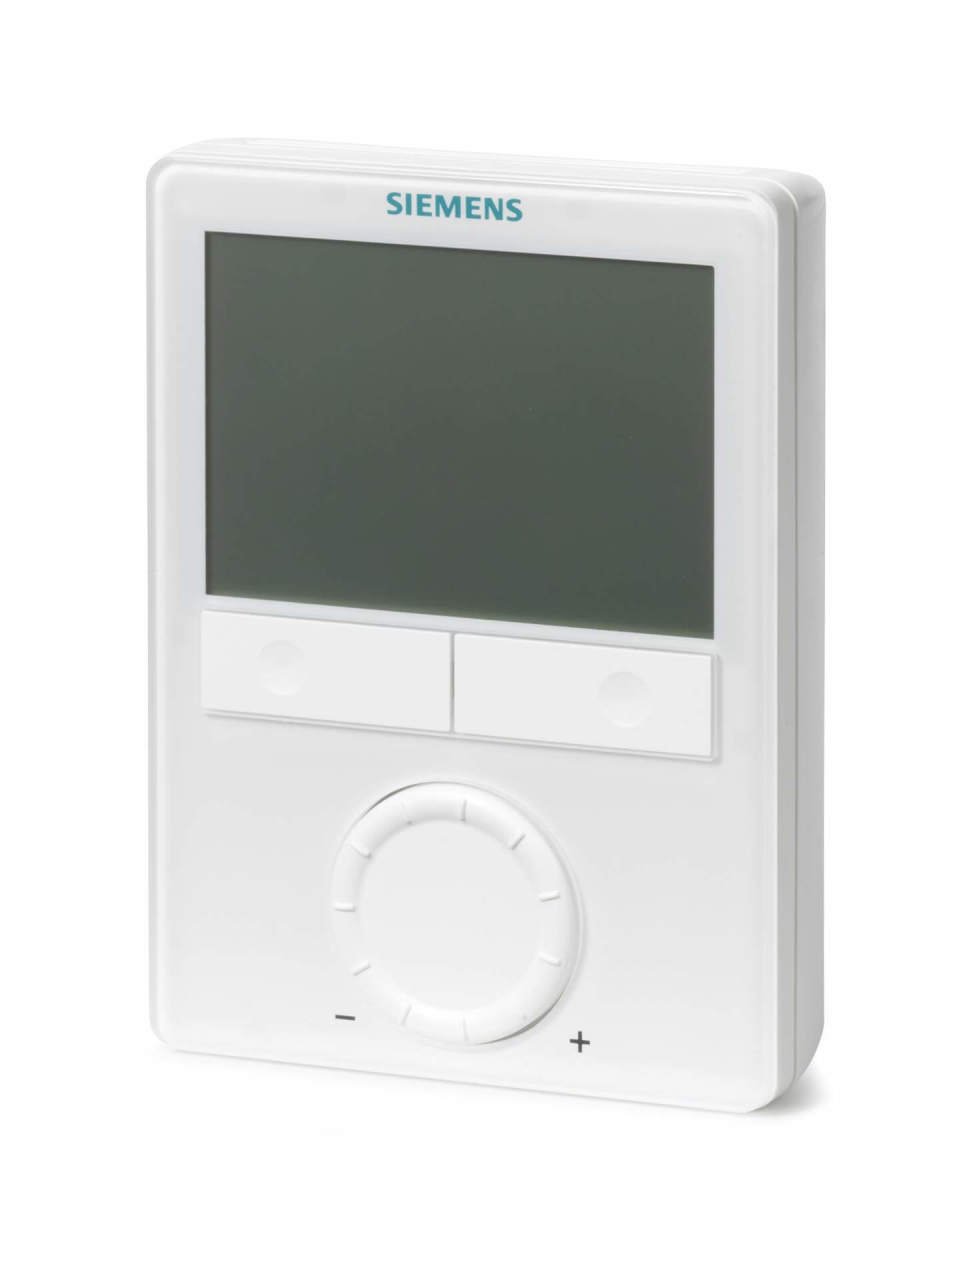 Siemens Oda Termostatı RDG100